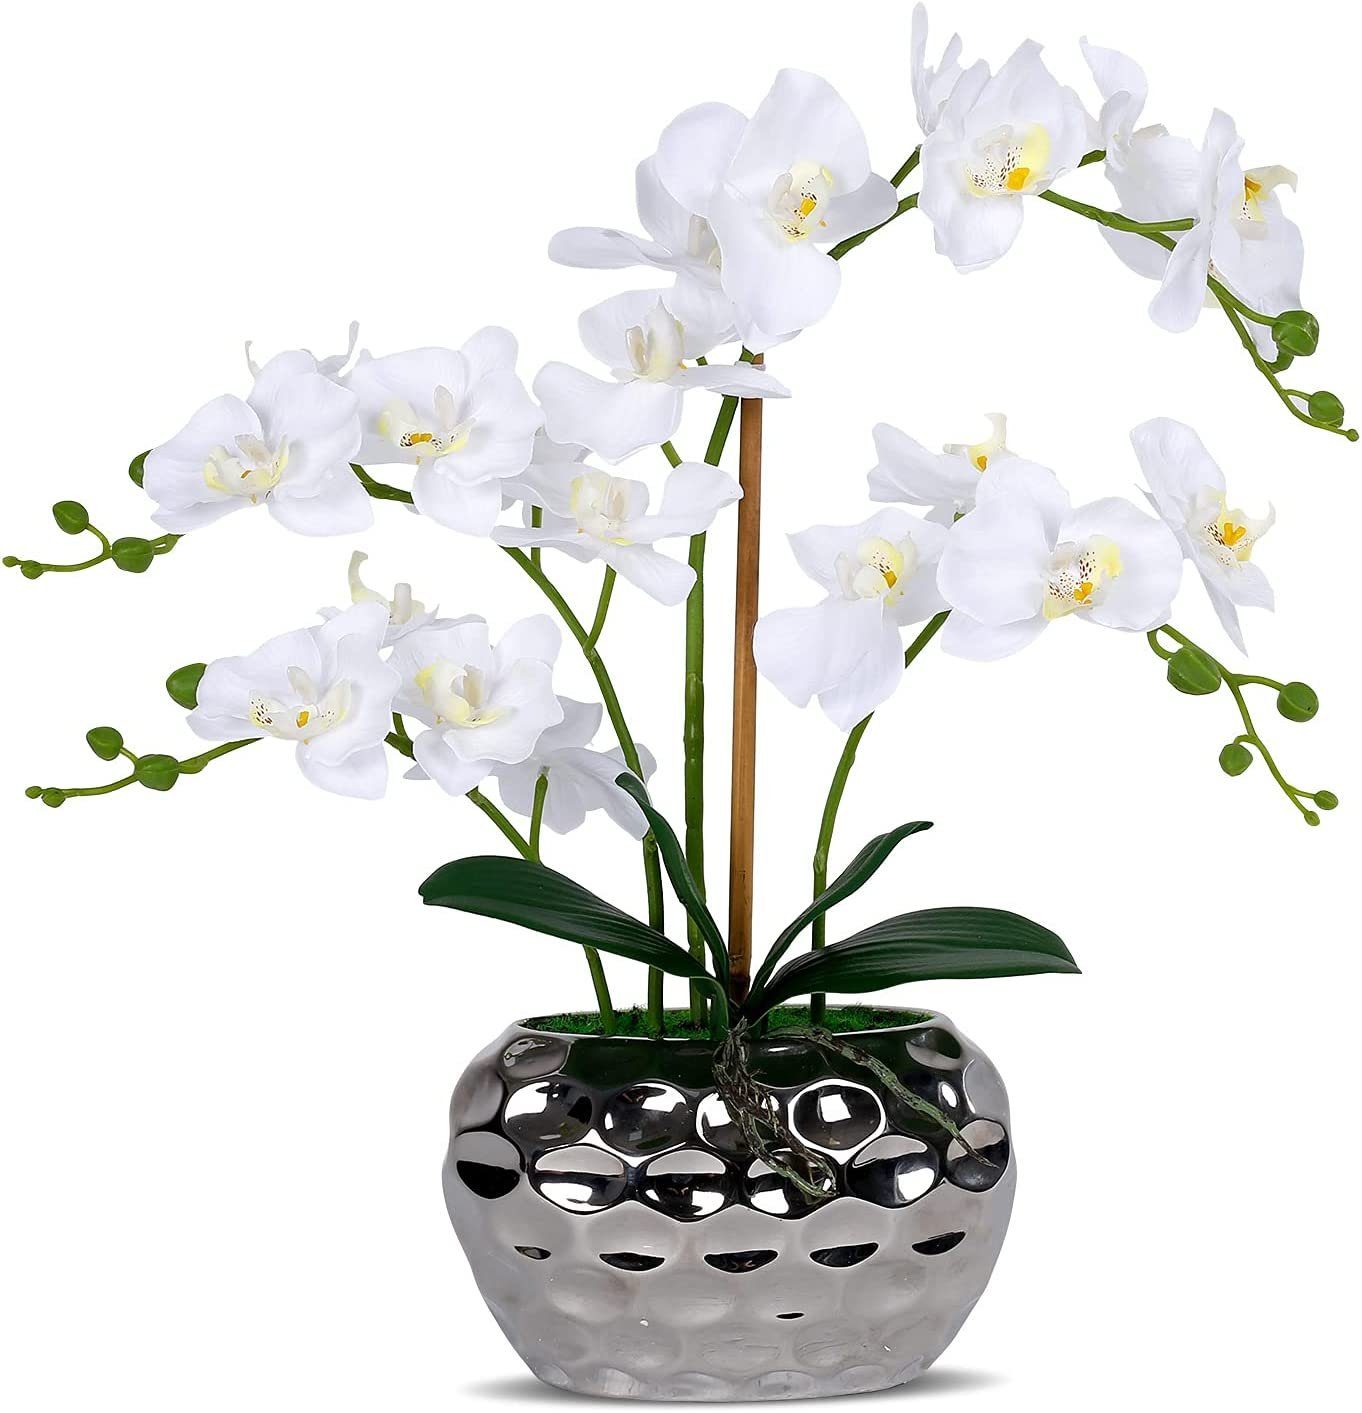 Wir stellen eine super berühmte Marke vor! Kunstorchidee Zggzerg Kunst Orchidee Orchidee silberfarbenem Topf, weiße in zggzerg